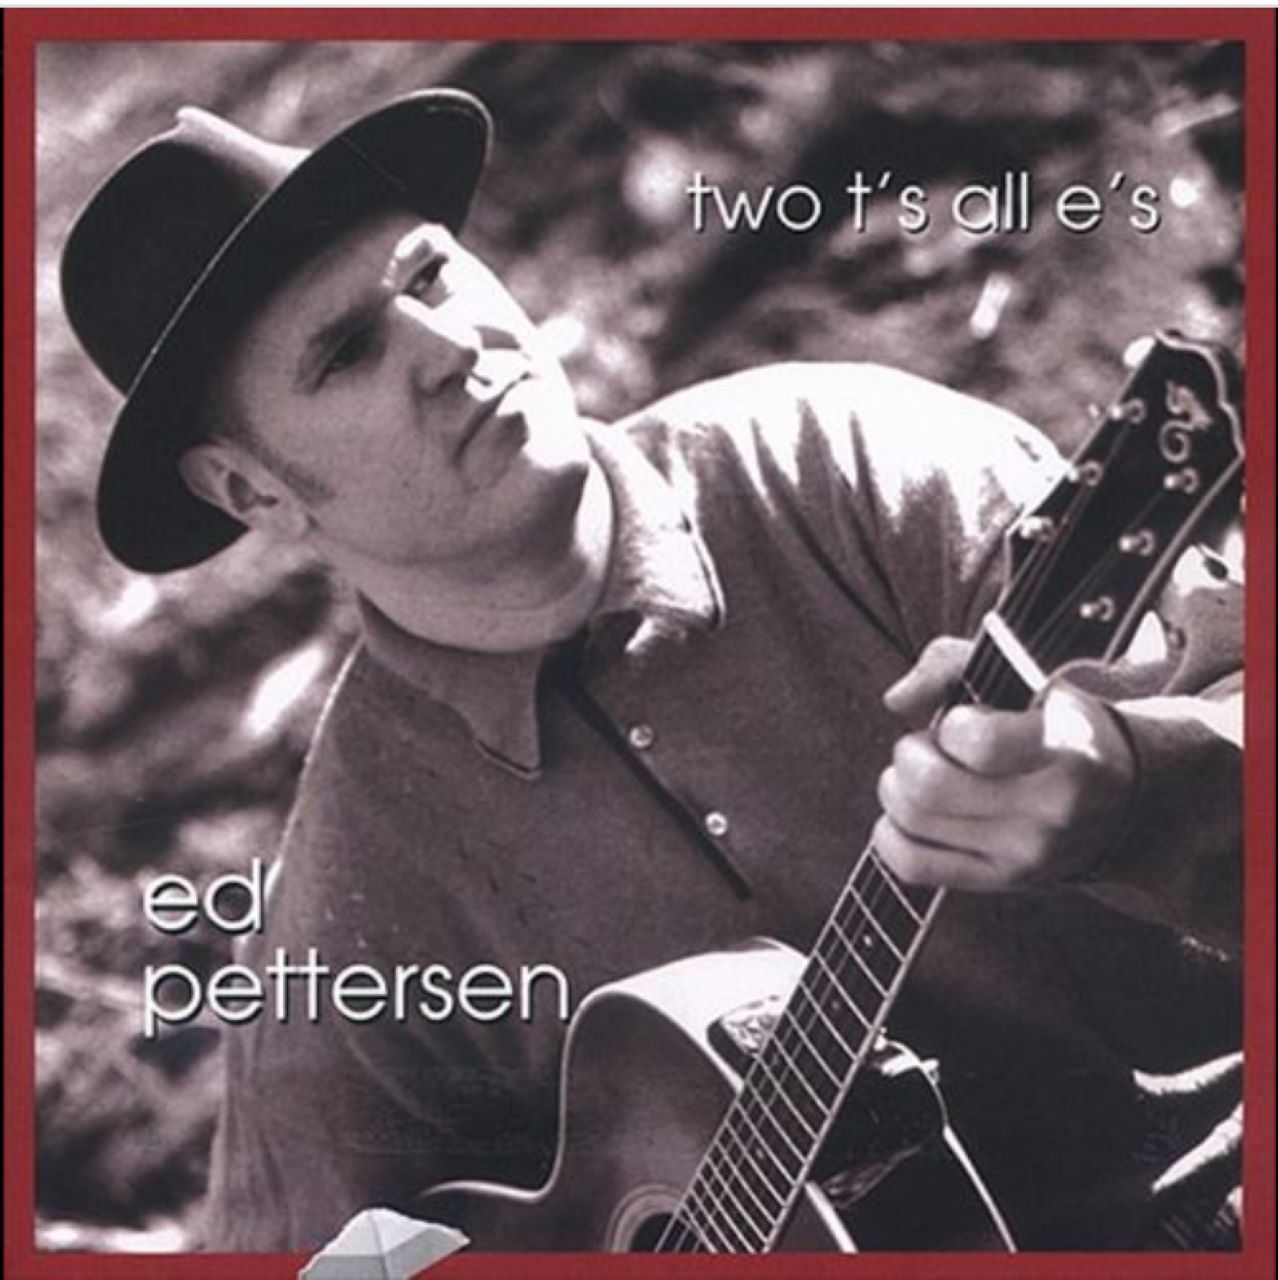 Ed Pettersen – Two T's All E's cover album